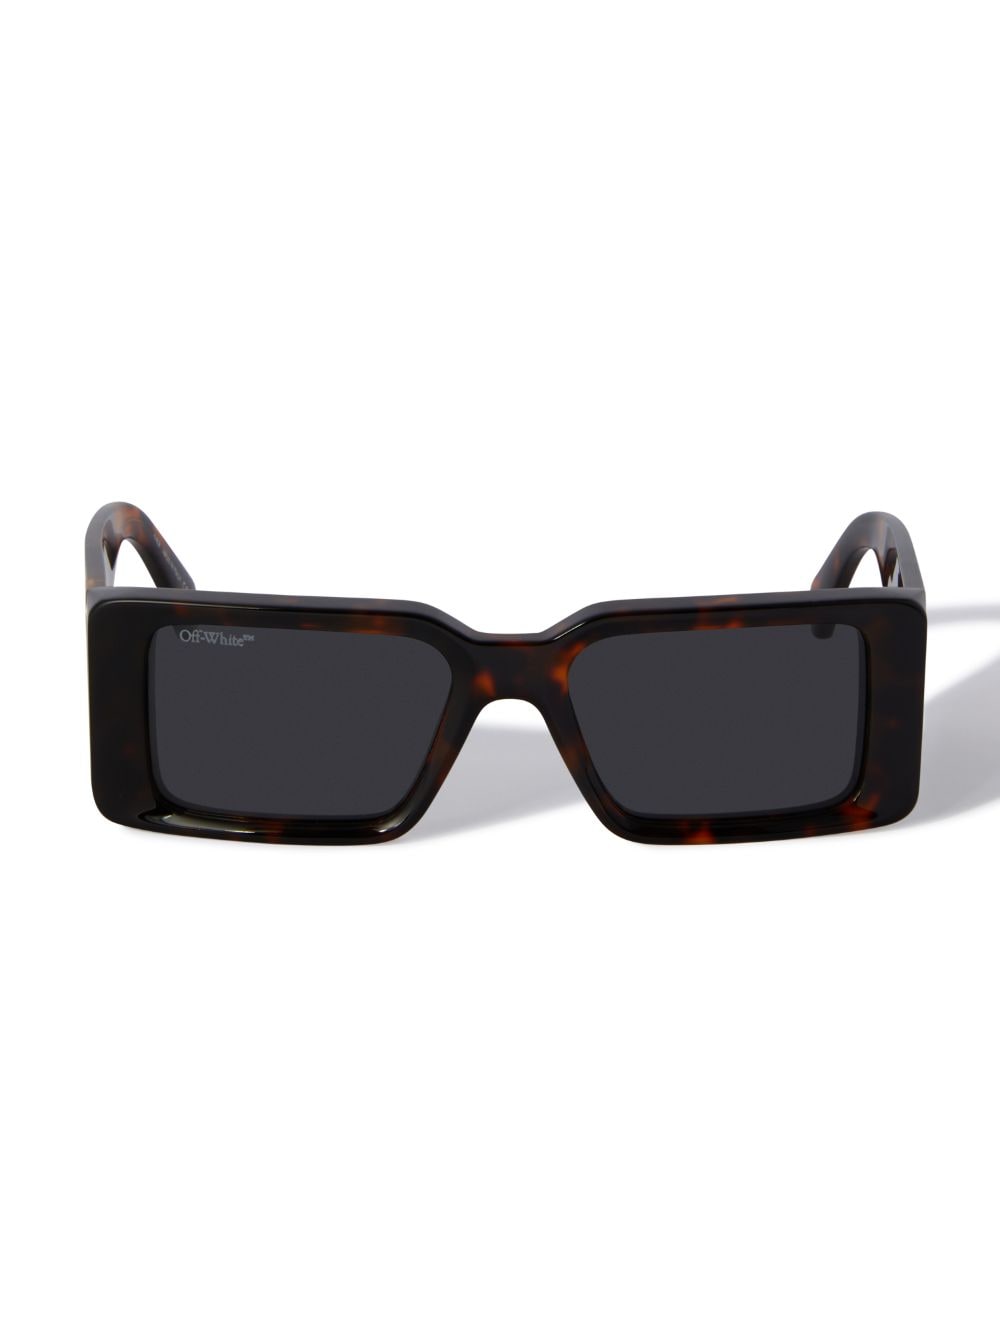 Off-white Milano Sunglasses In Brown